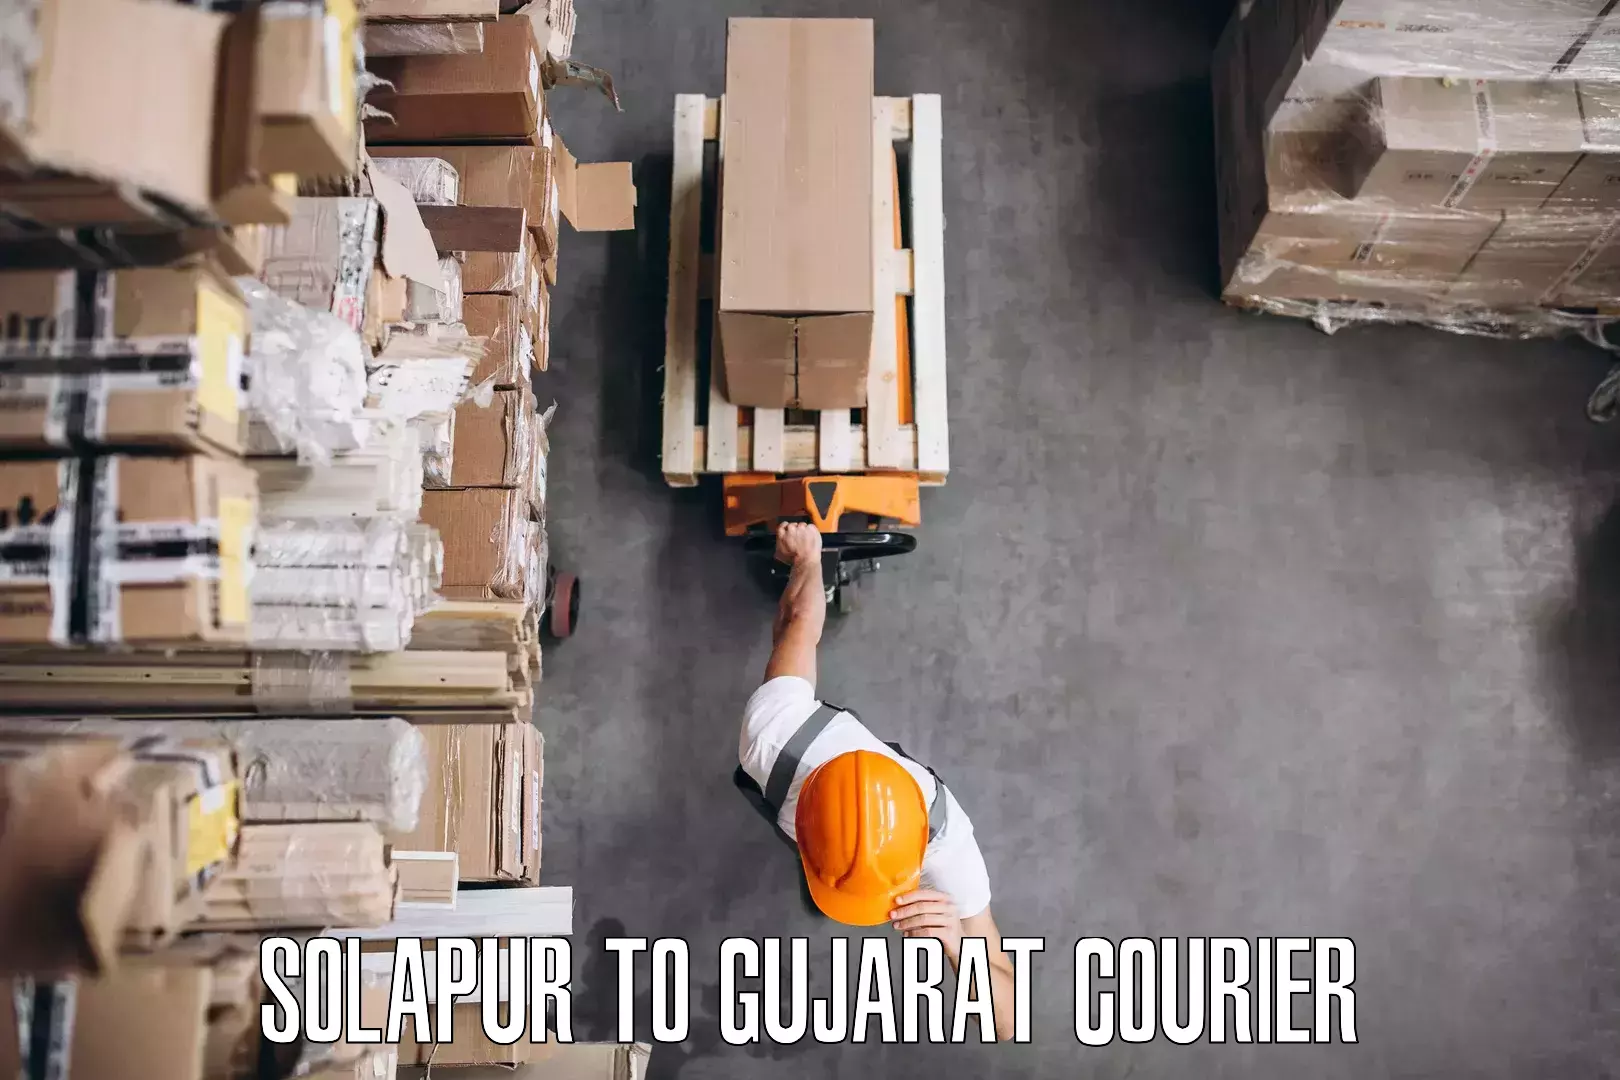 Furniture relocation experts Solapur to Visavadar